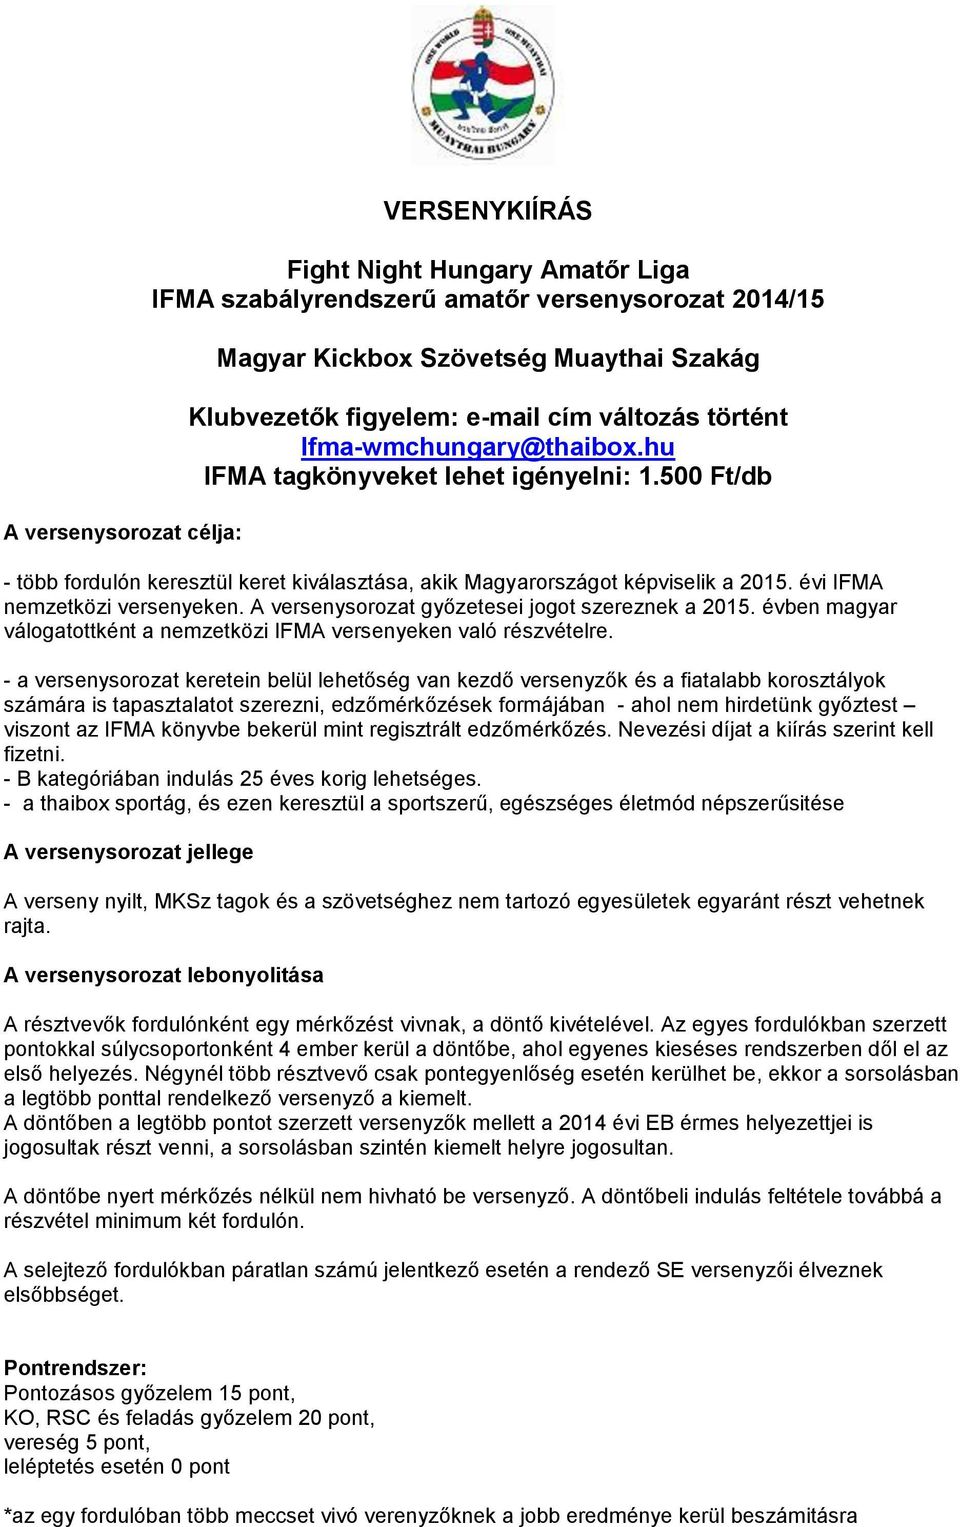 évi IFMA nemzetközi versenyeken. A versenysorozat győzetesei jogot szereznek a 2015. évben magyar válogatottként a nemzetközi IFMA versenyeken való részvételre.